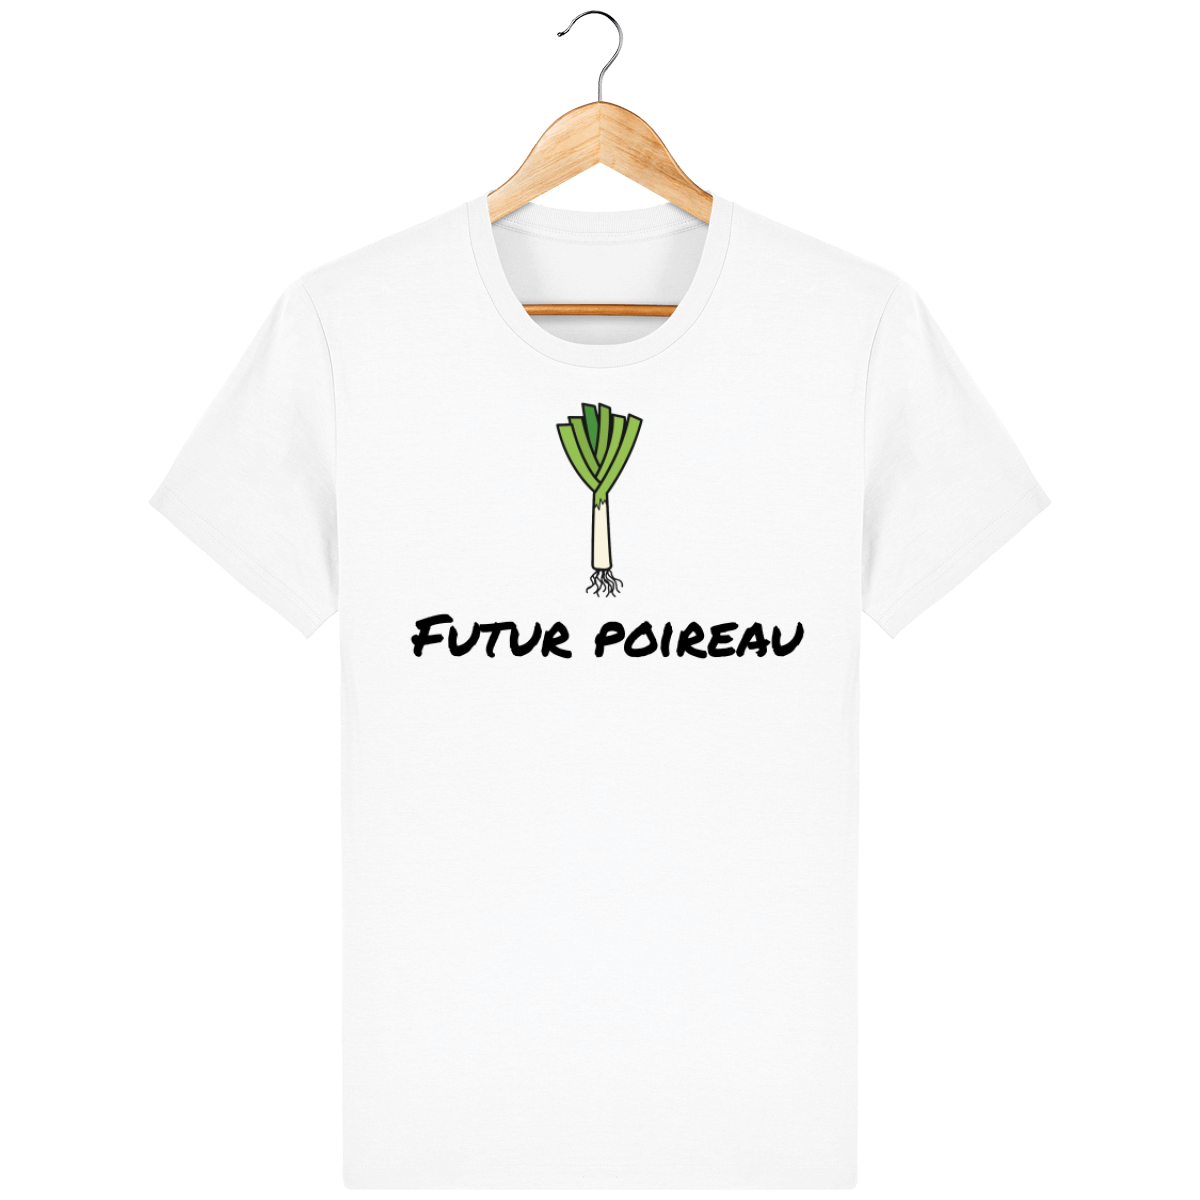 T-shirt Unisexe - Futur poireau